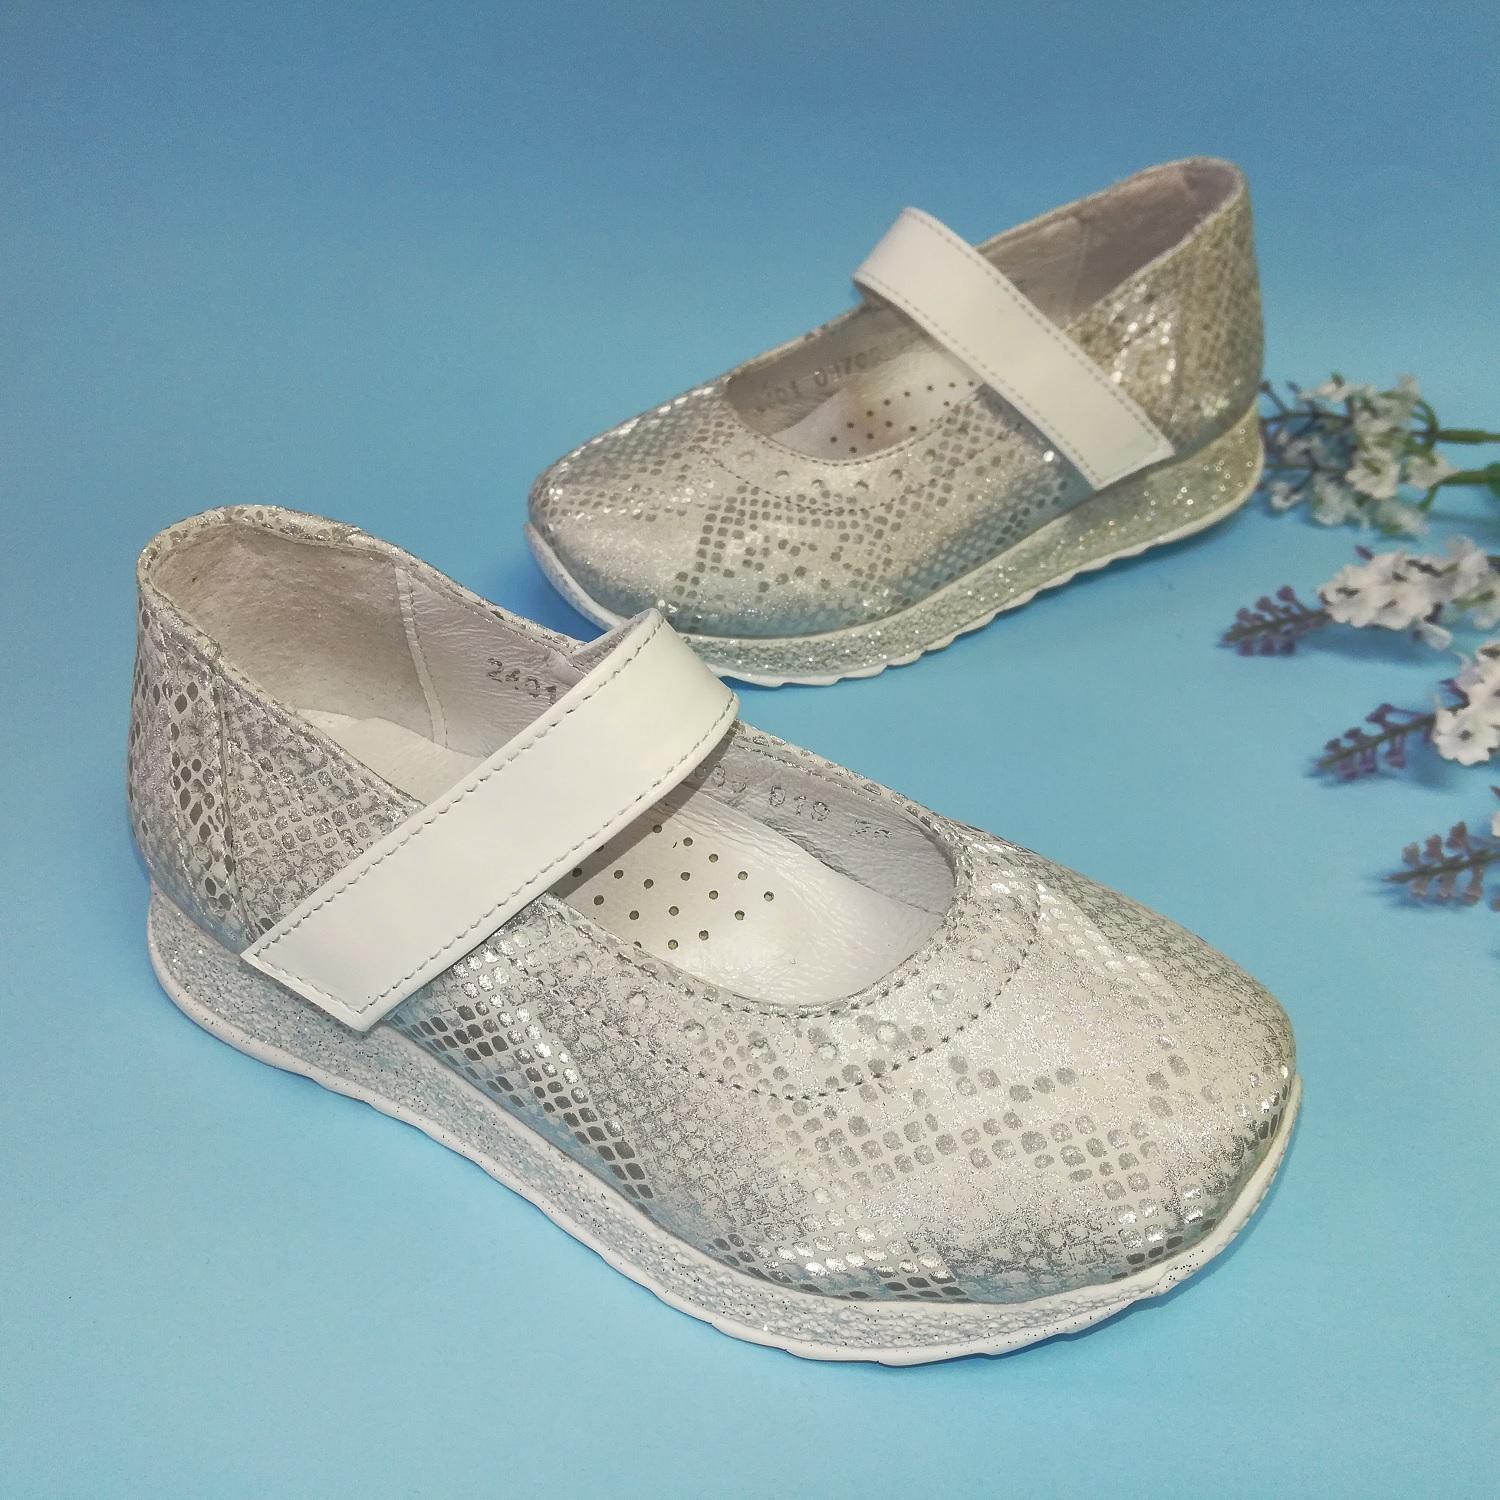 Дитячі туфлі для дівчинки, сріблясті 35 розміру (09700/635/919, 07700/635/919), Bistfor